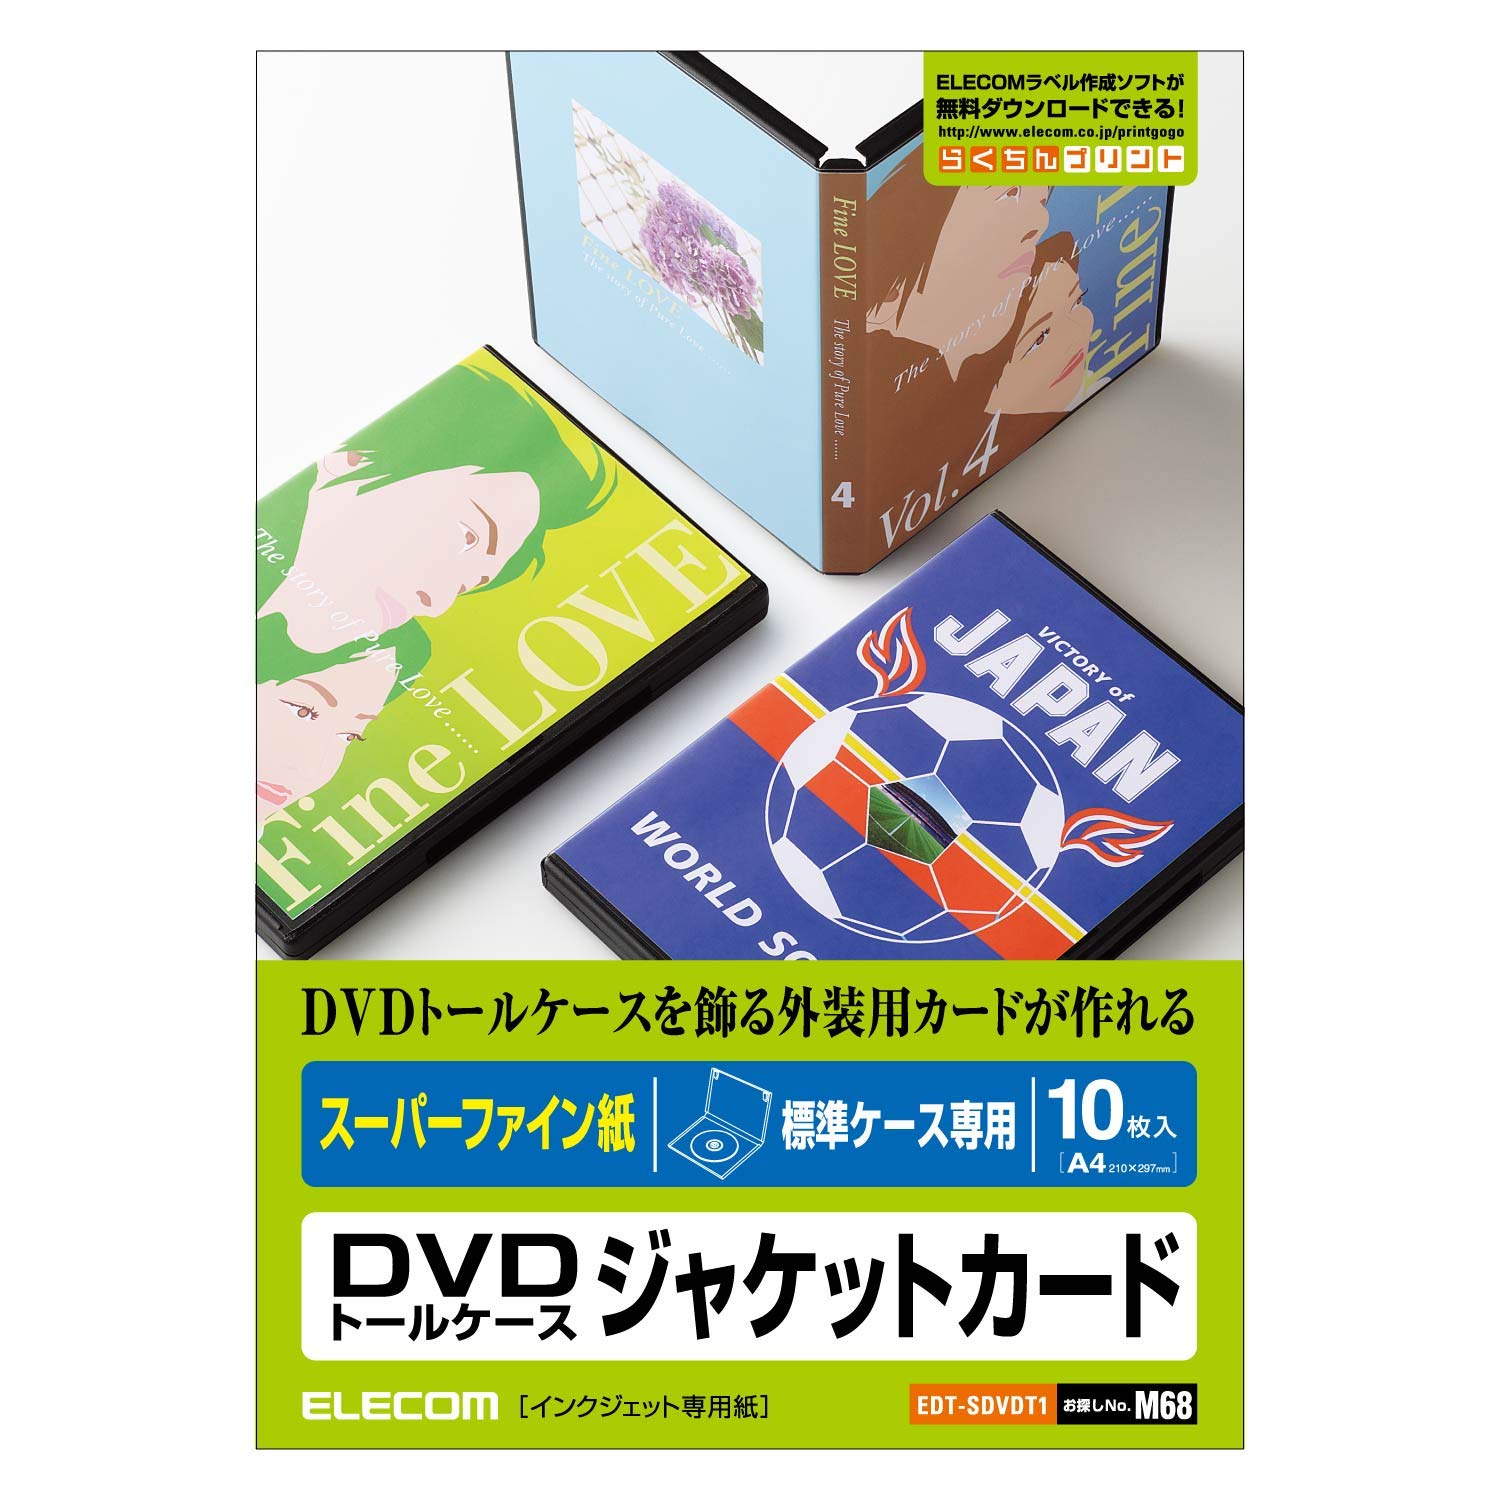 ELECOM DVDトールケースカード 10枚入/カード:W271×D182MM EDT-SDVDT1